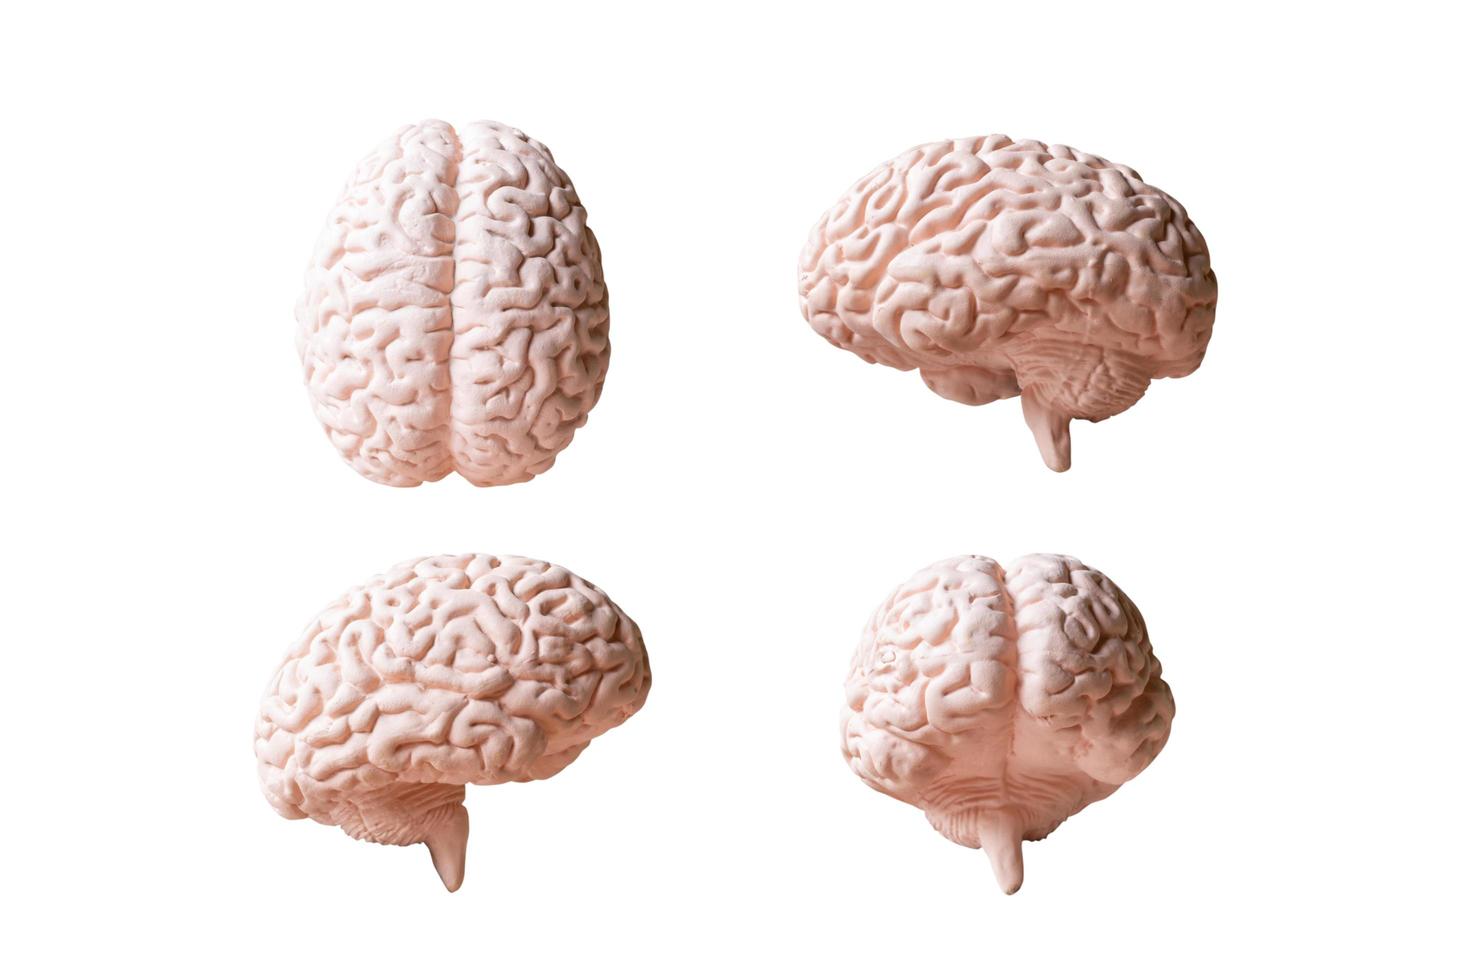 anatomisches Modell eines menschlichen Gehirns lokalisiert auf einem weißen Hintergrund foto